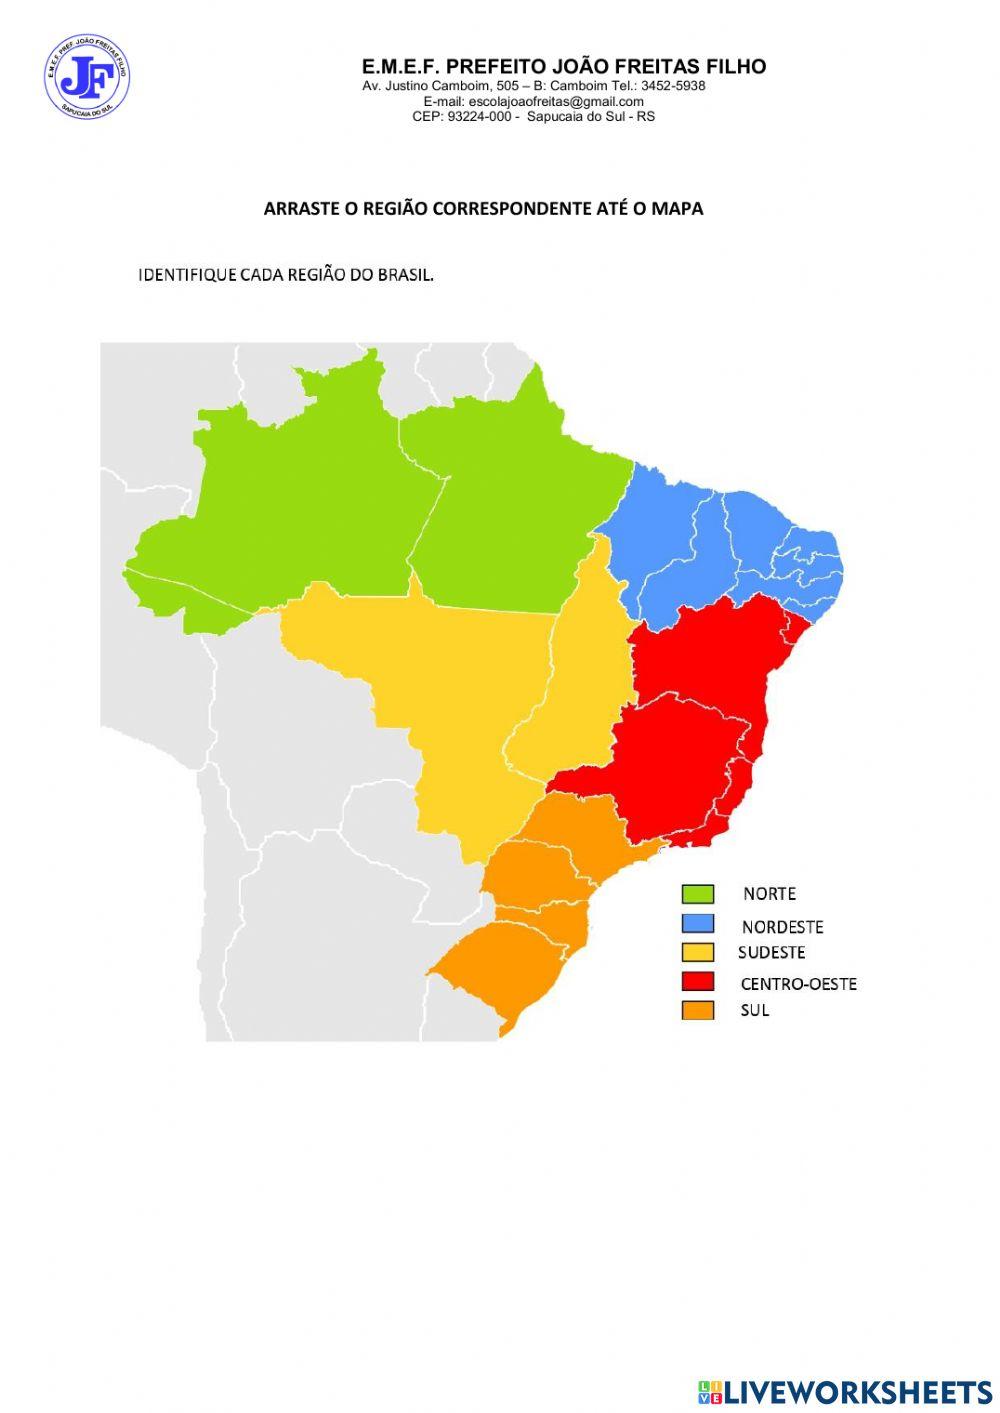 Regiões do brasil